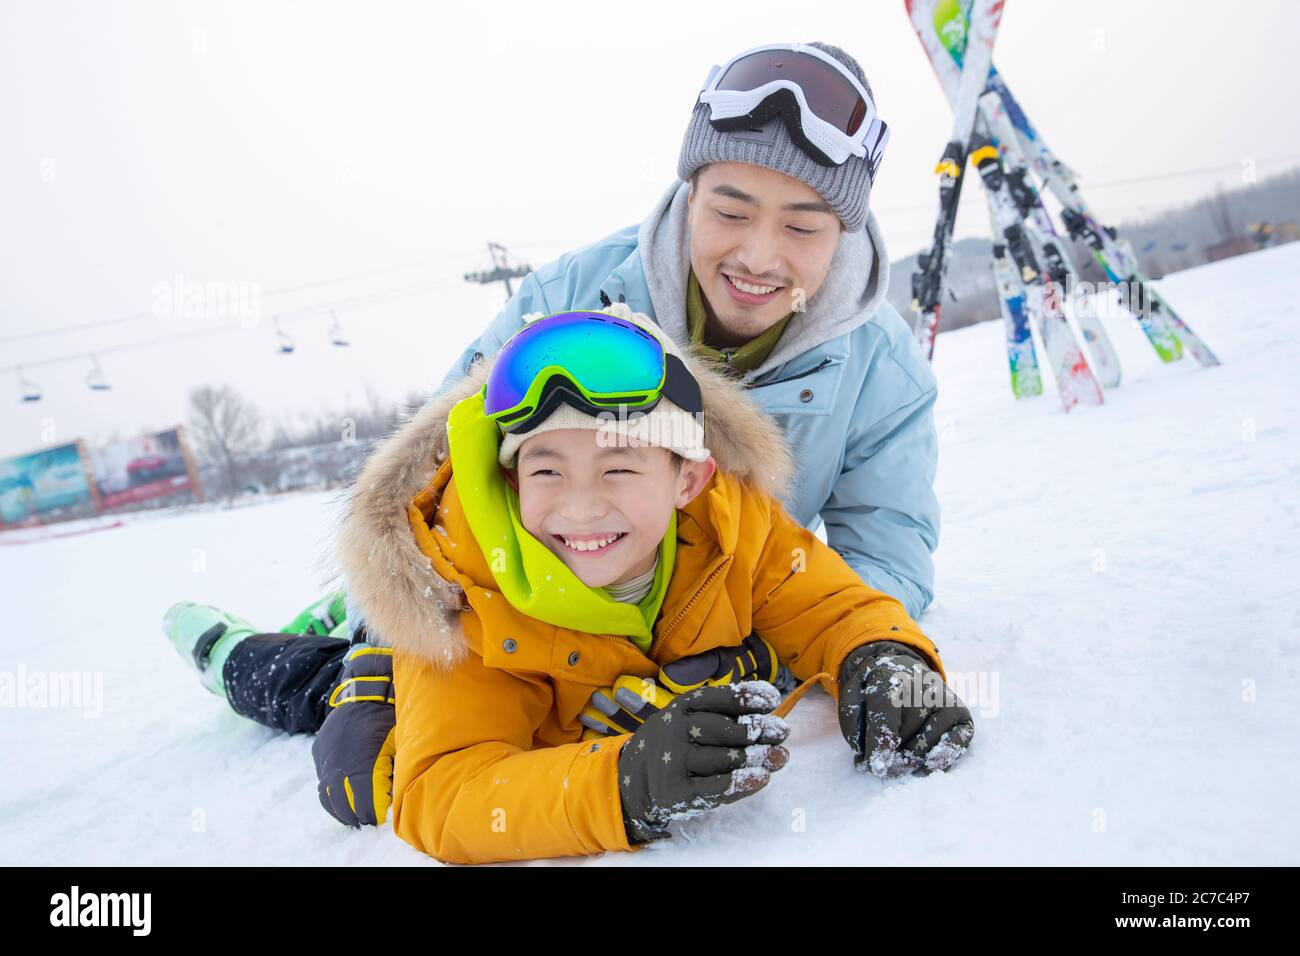 Campo de esquí en el padre y el hijo felices rodando juntos Foto de stock